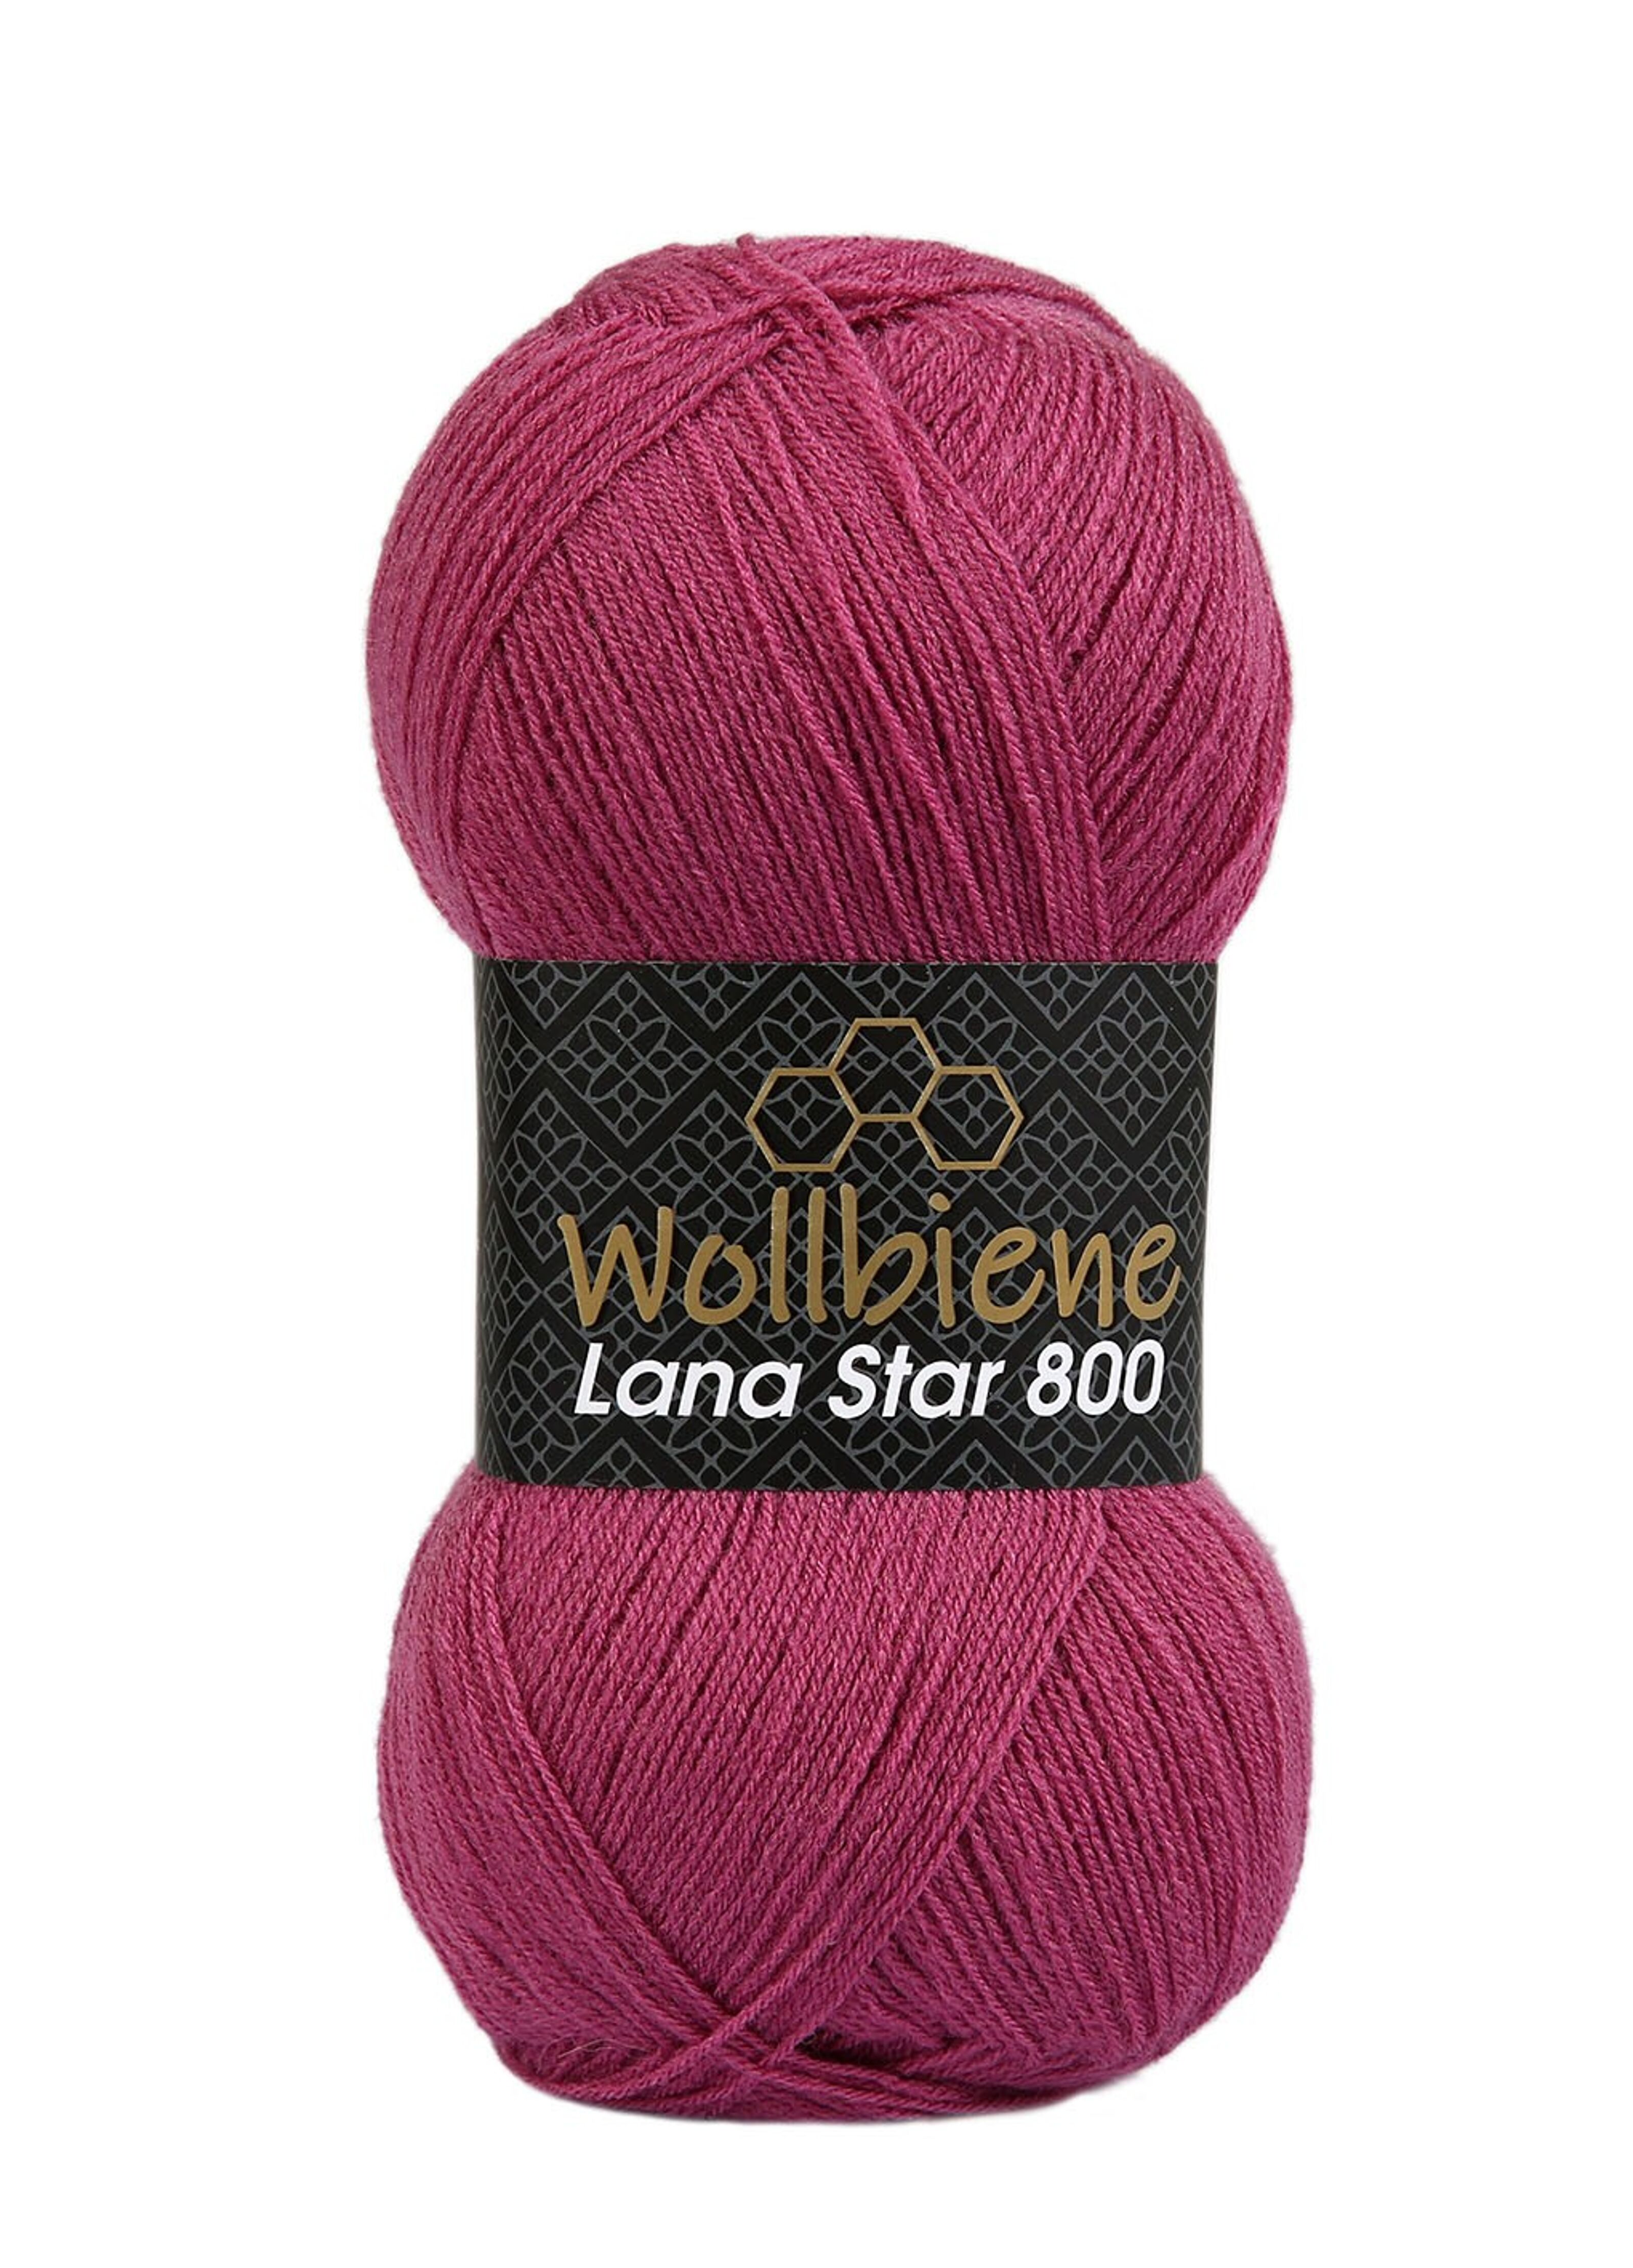 Achat Laine d'abeille Lana Star 800 rose foncé 13 25% laine couleurs unies  en gros